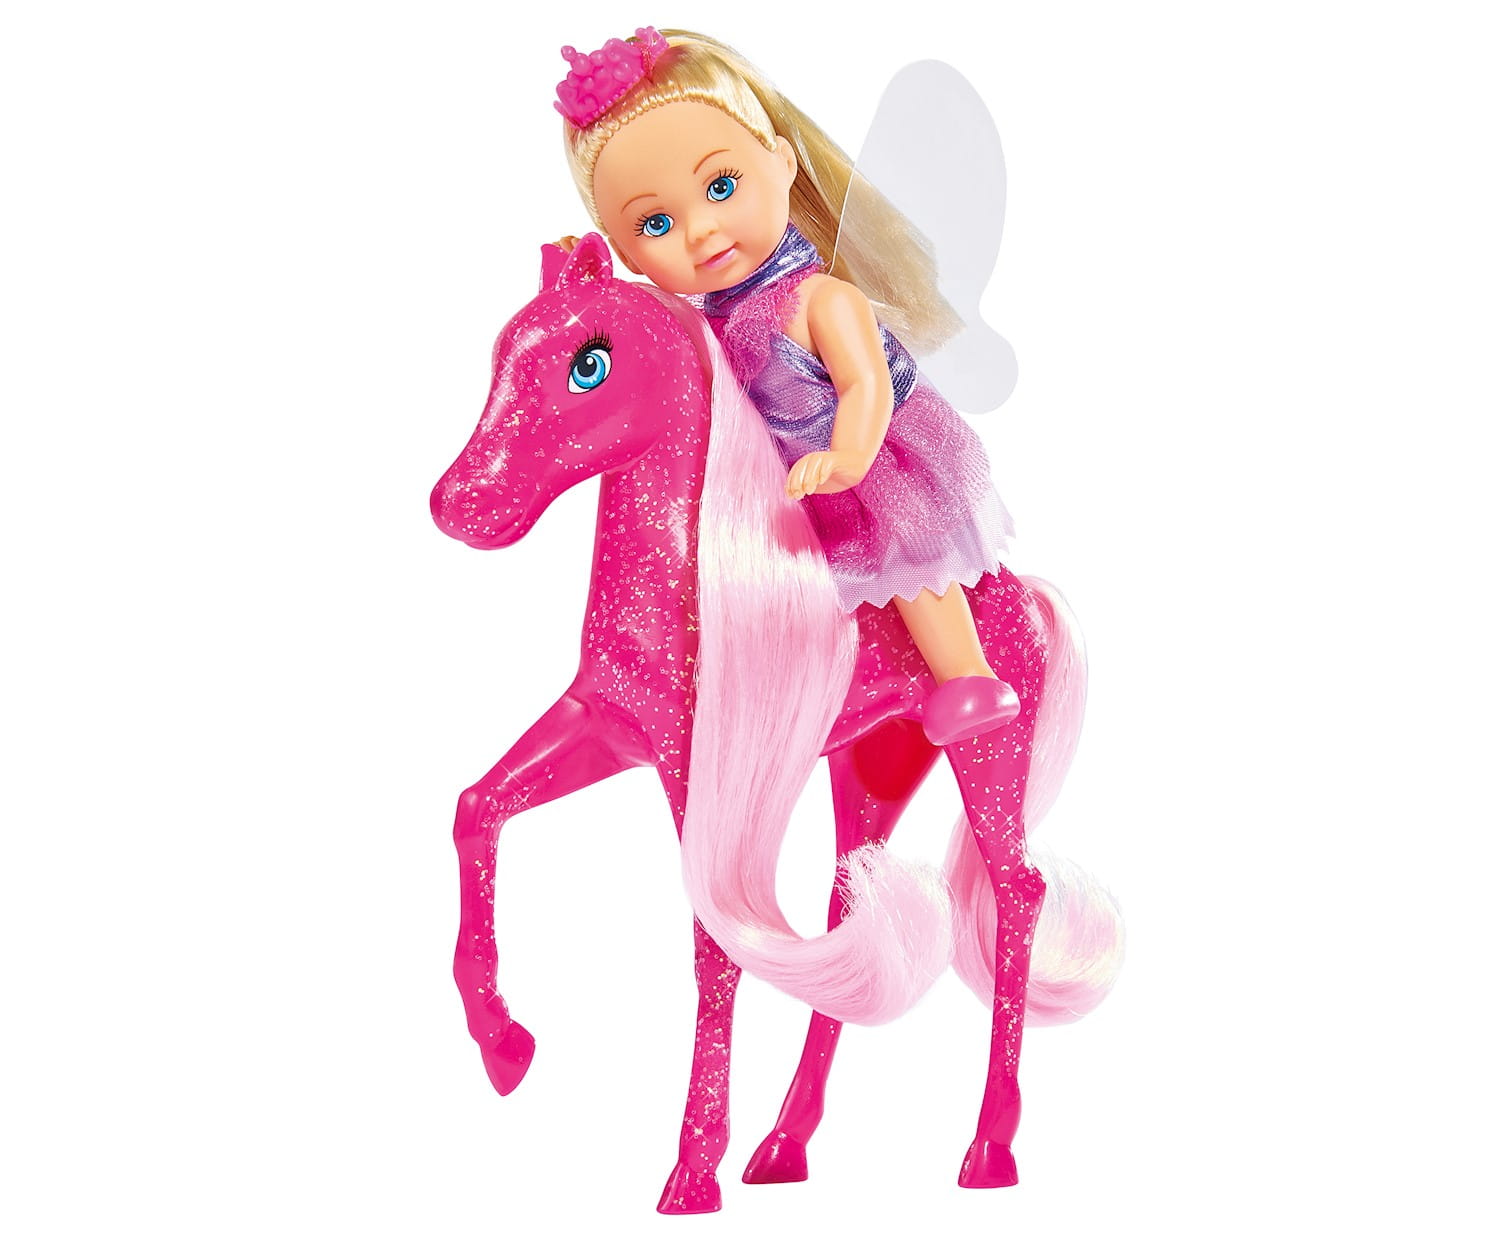 Simba EL Little Fairy & Pony